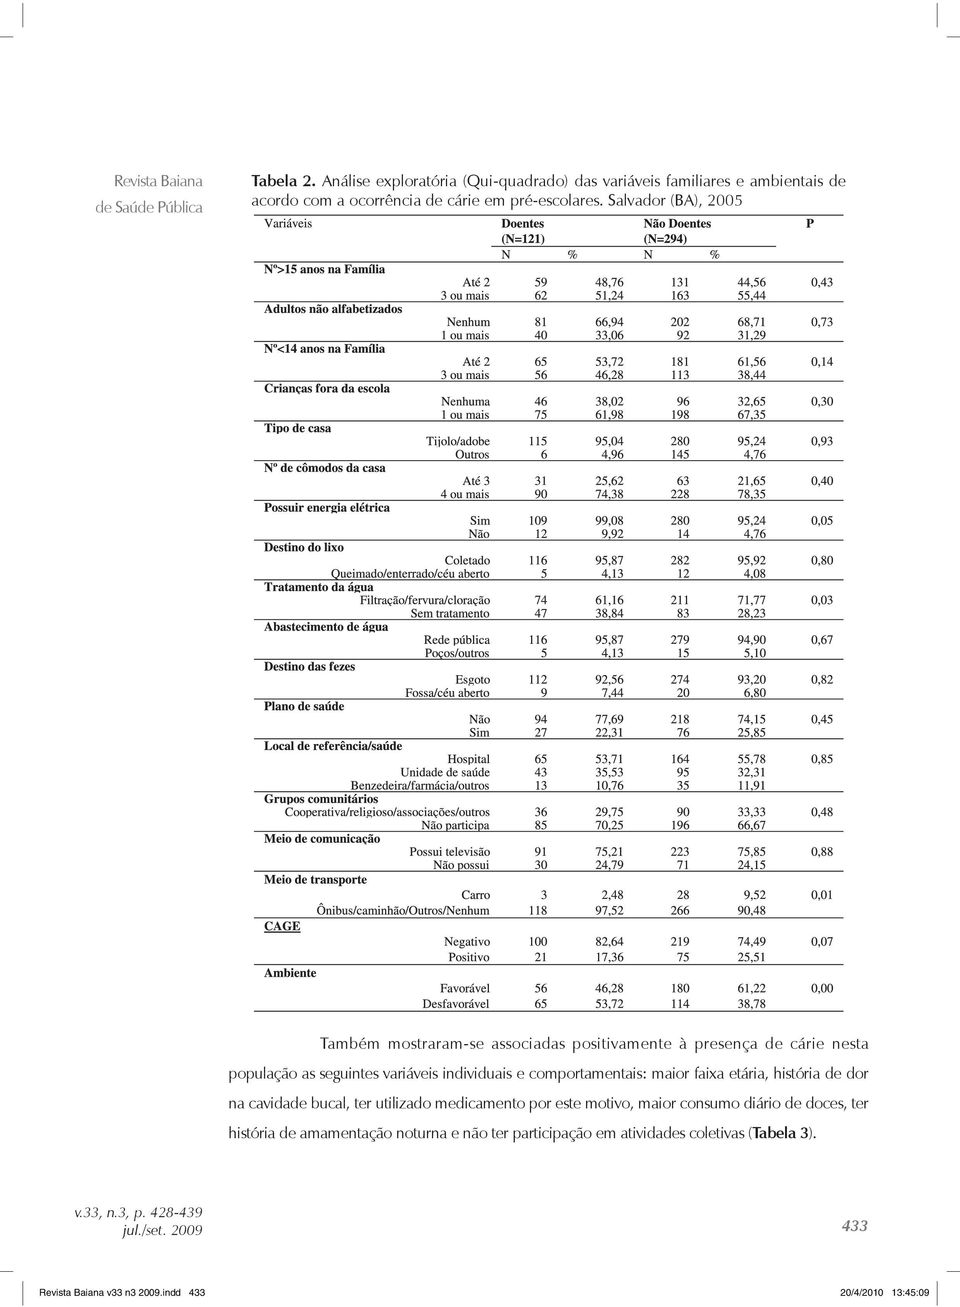 Salvador (BA), 2005 Também mostraram-se associadas positivamente à presença de cárie nesta população as seguintes variáveis individuais e comportamentais: maior